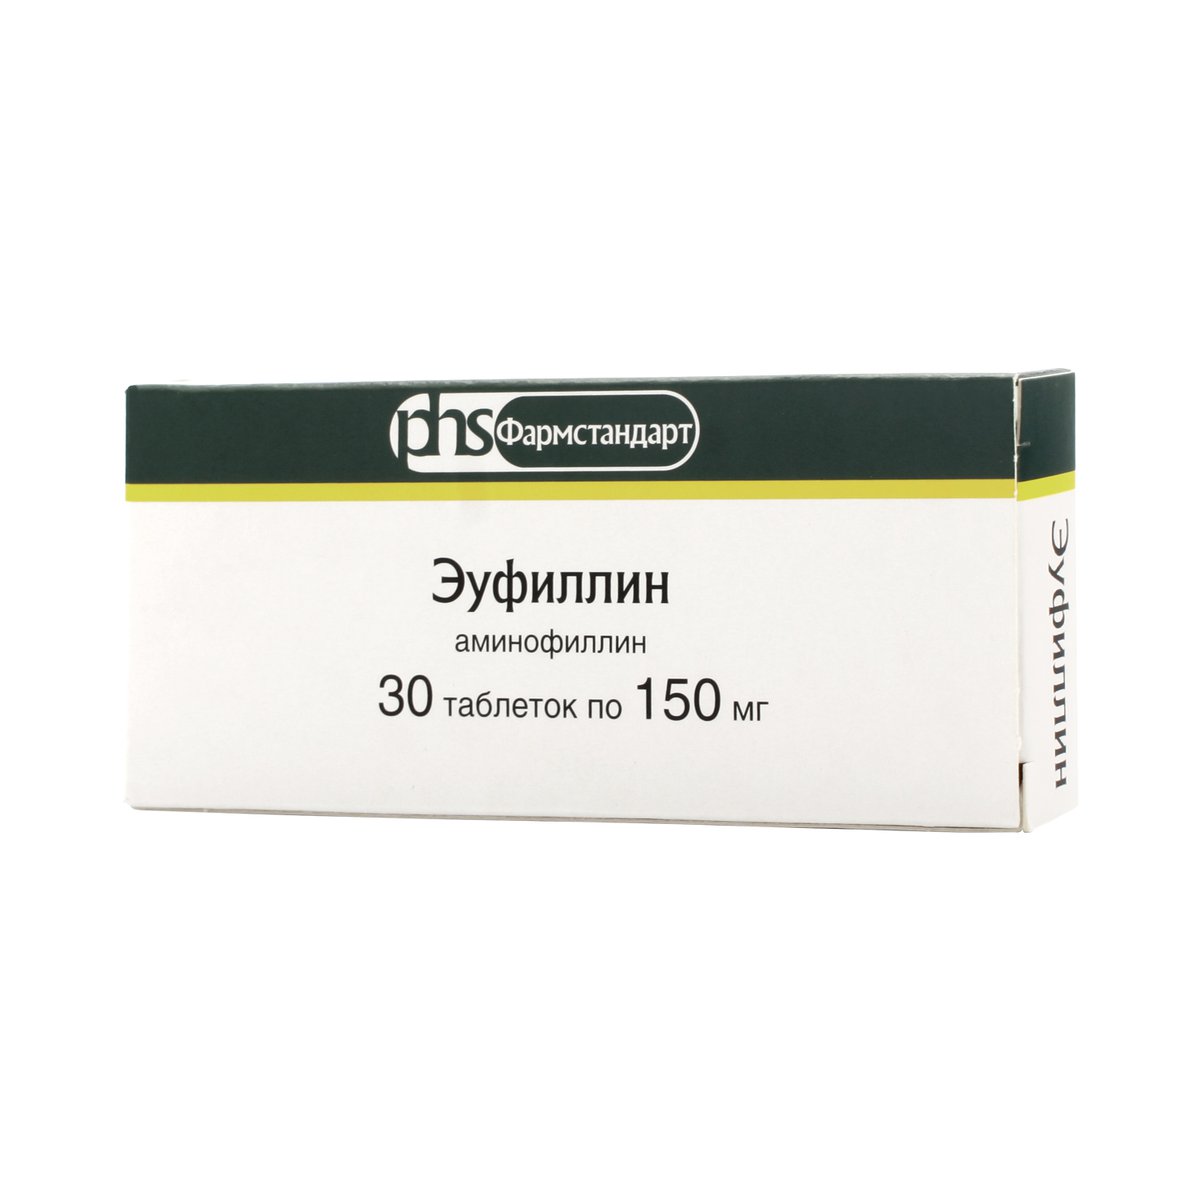 Эуфиллин фармстандарт (таблетки, 30 шт, 150 мг) - цена,  онлайн в .